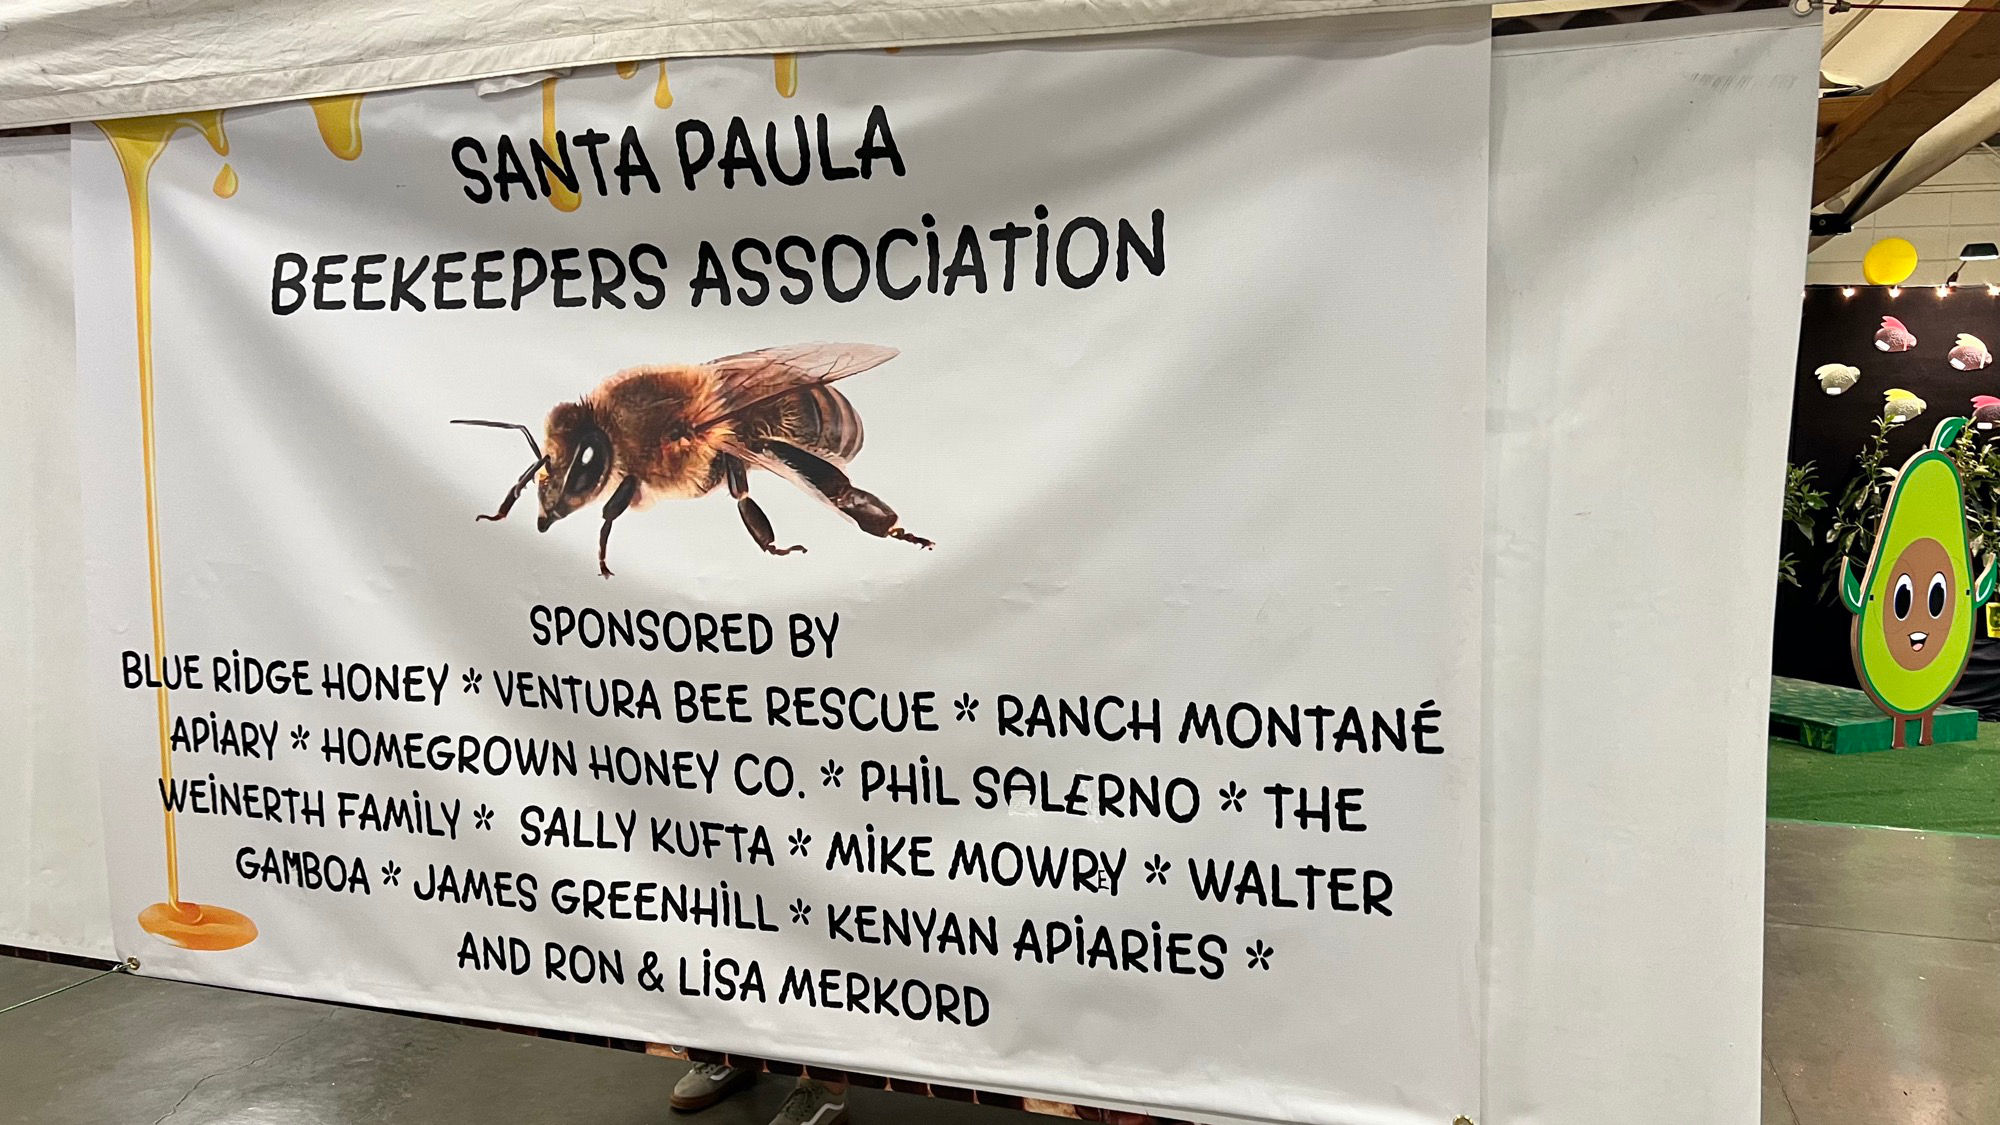 Santa Paula Beekeepers Association Sponsors